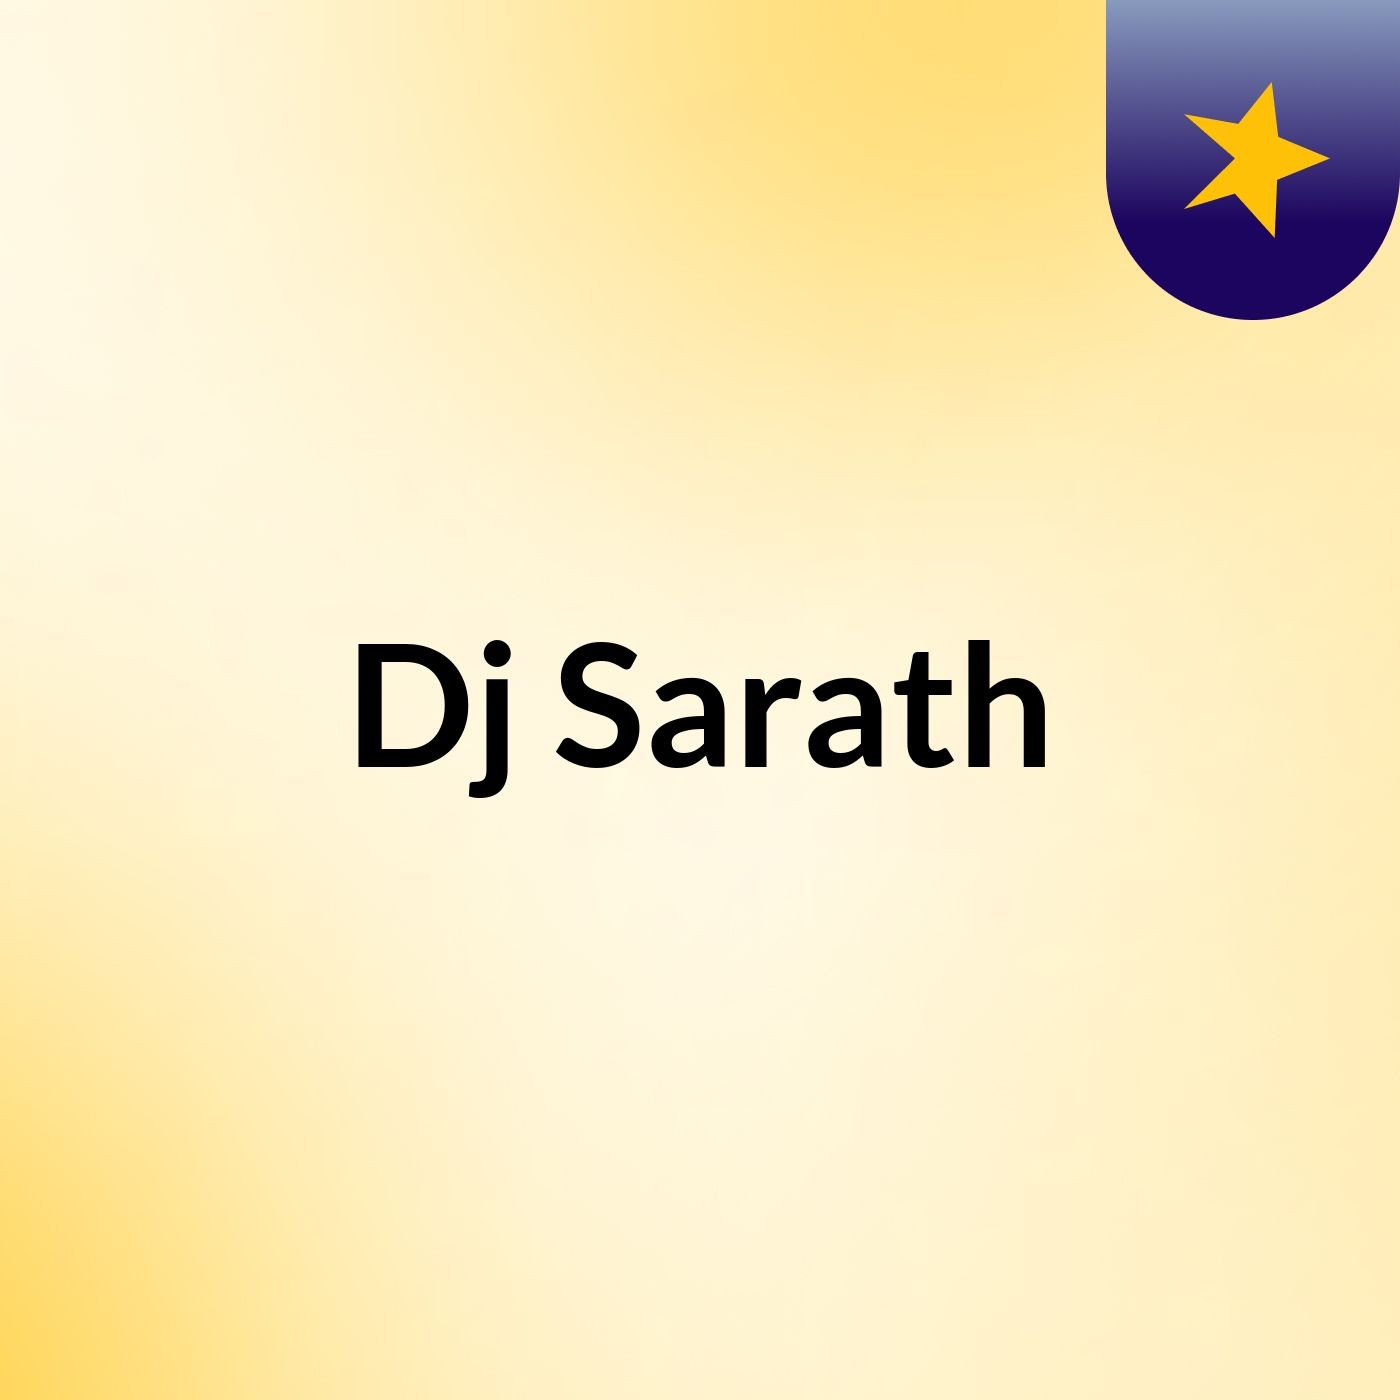 Episode 4 - Dj Sarath